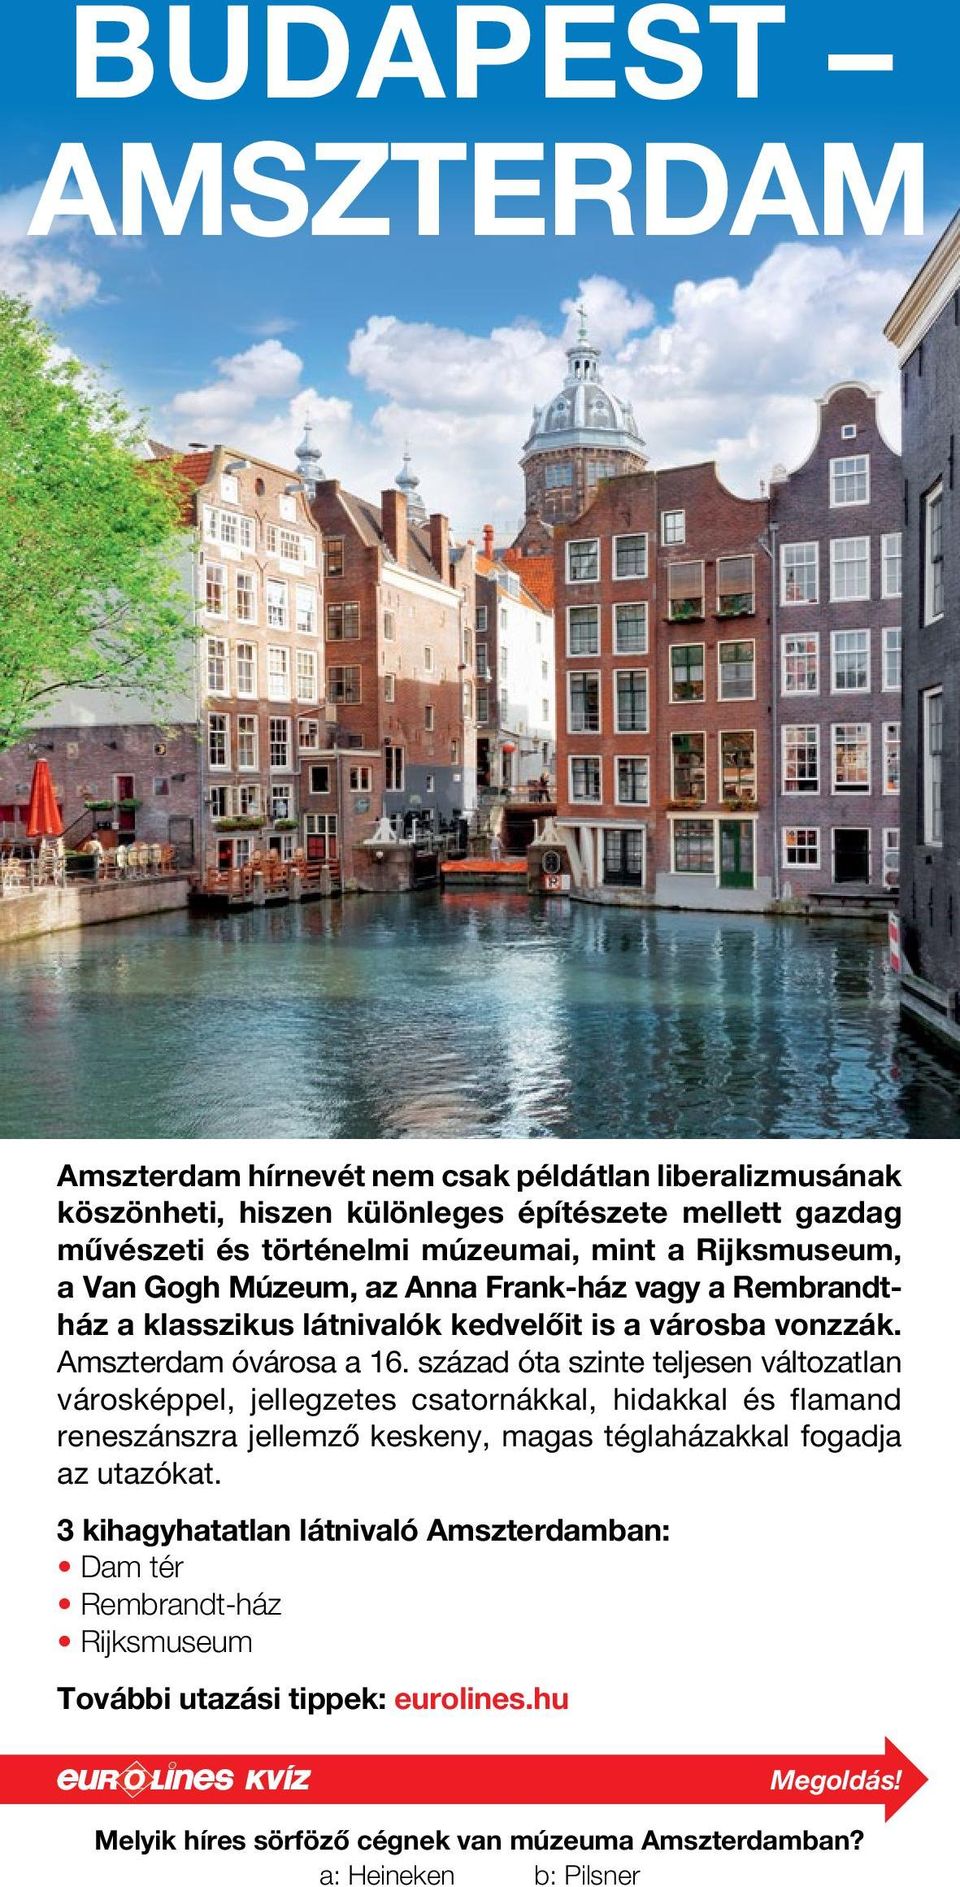 század óta szinte teljesen változatlan városképpel, jellegzetes csatornákkal, hidakkal és flamand reneszánszra jellemző keskeny, magas téglaházakkal fogadja az utazókat.